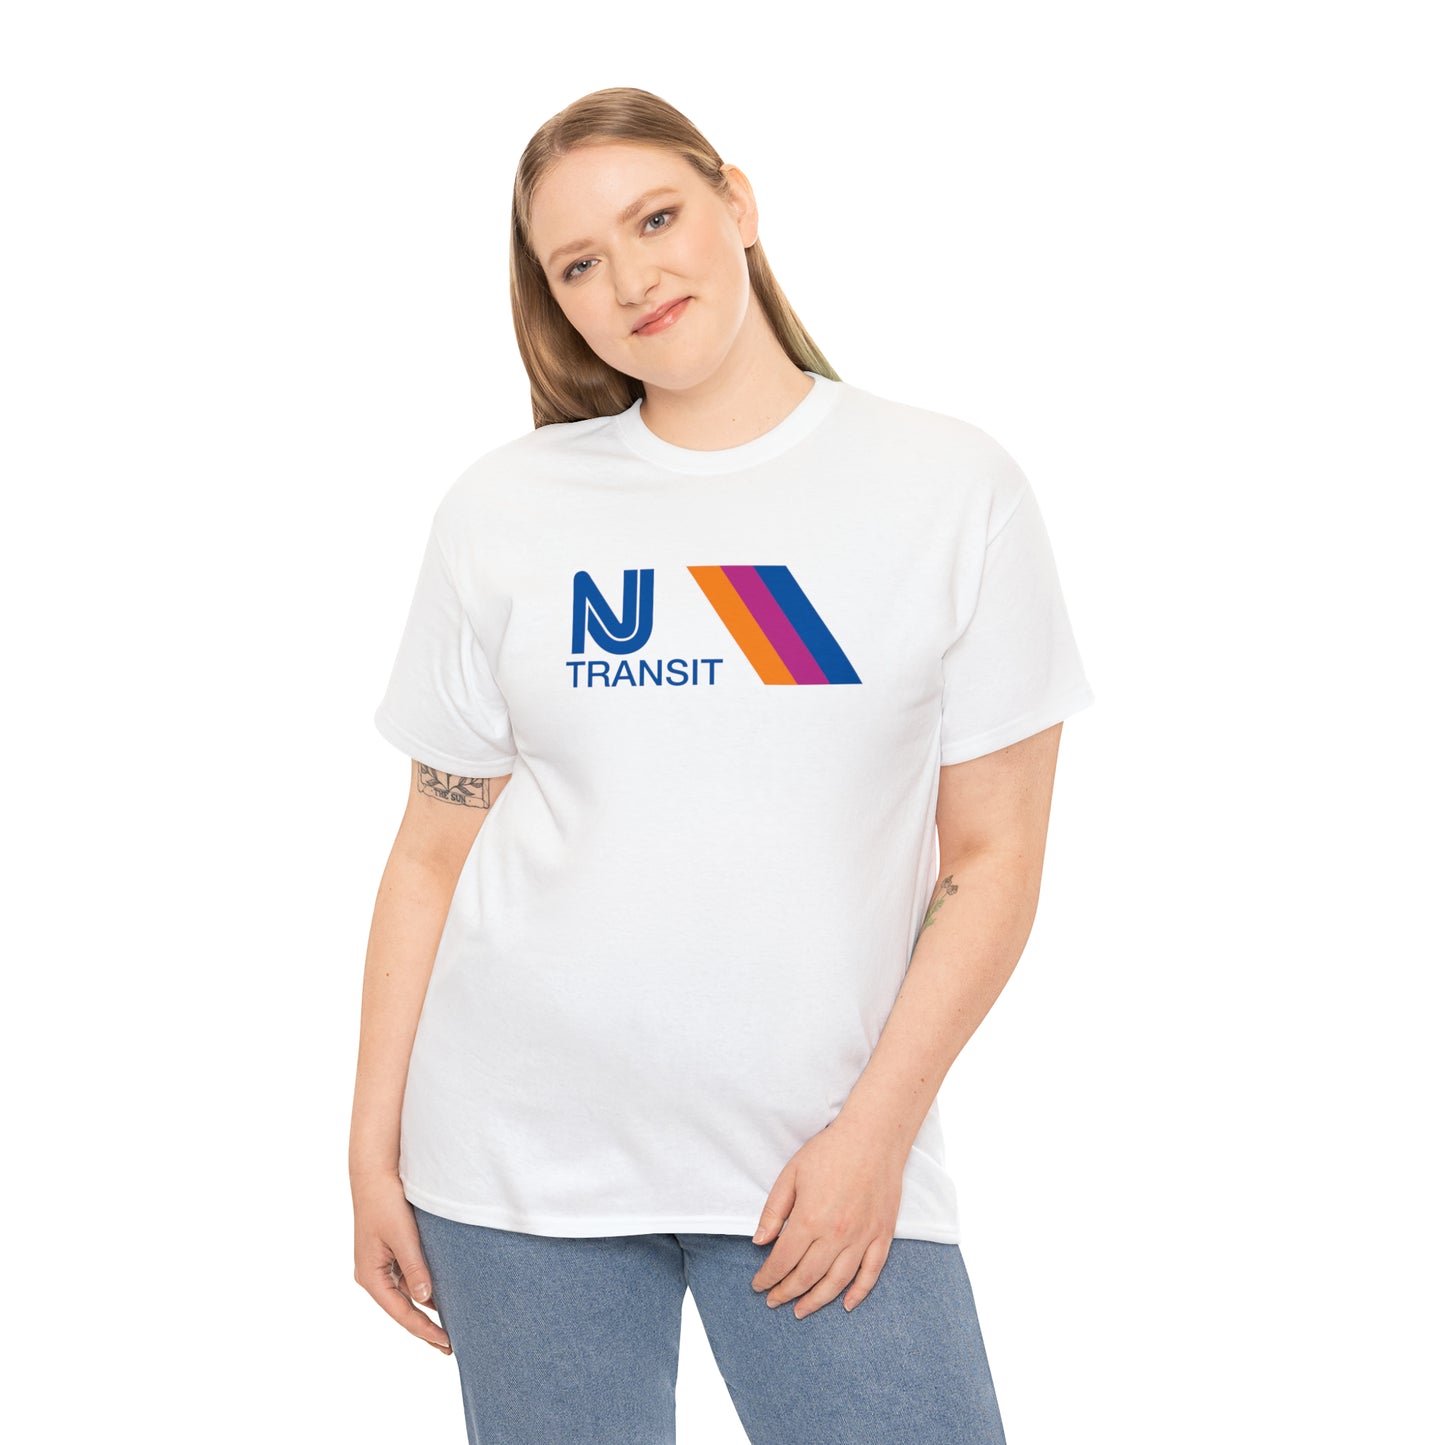 New Jersey Transit T-Shirt